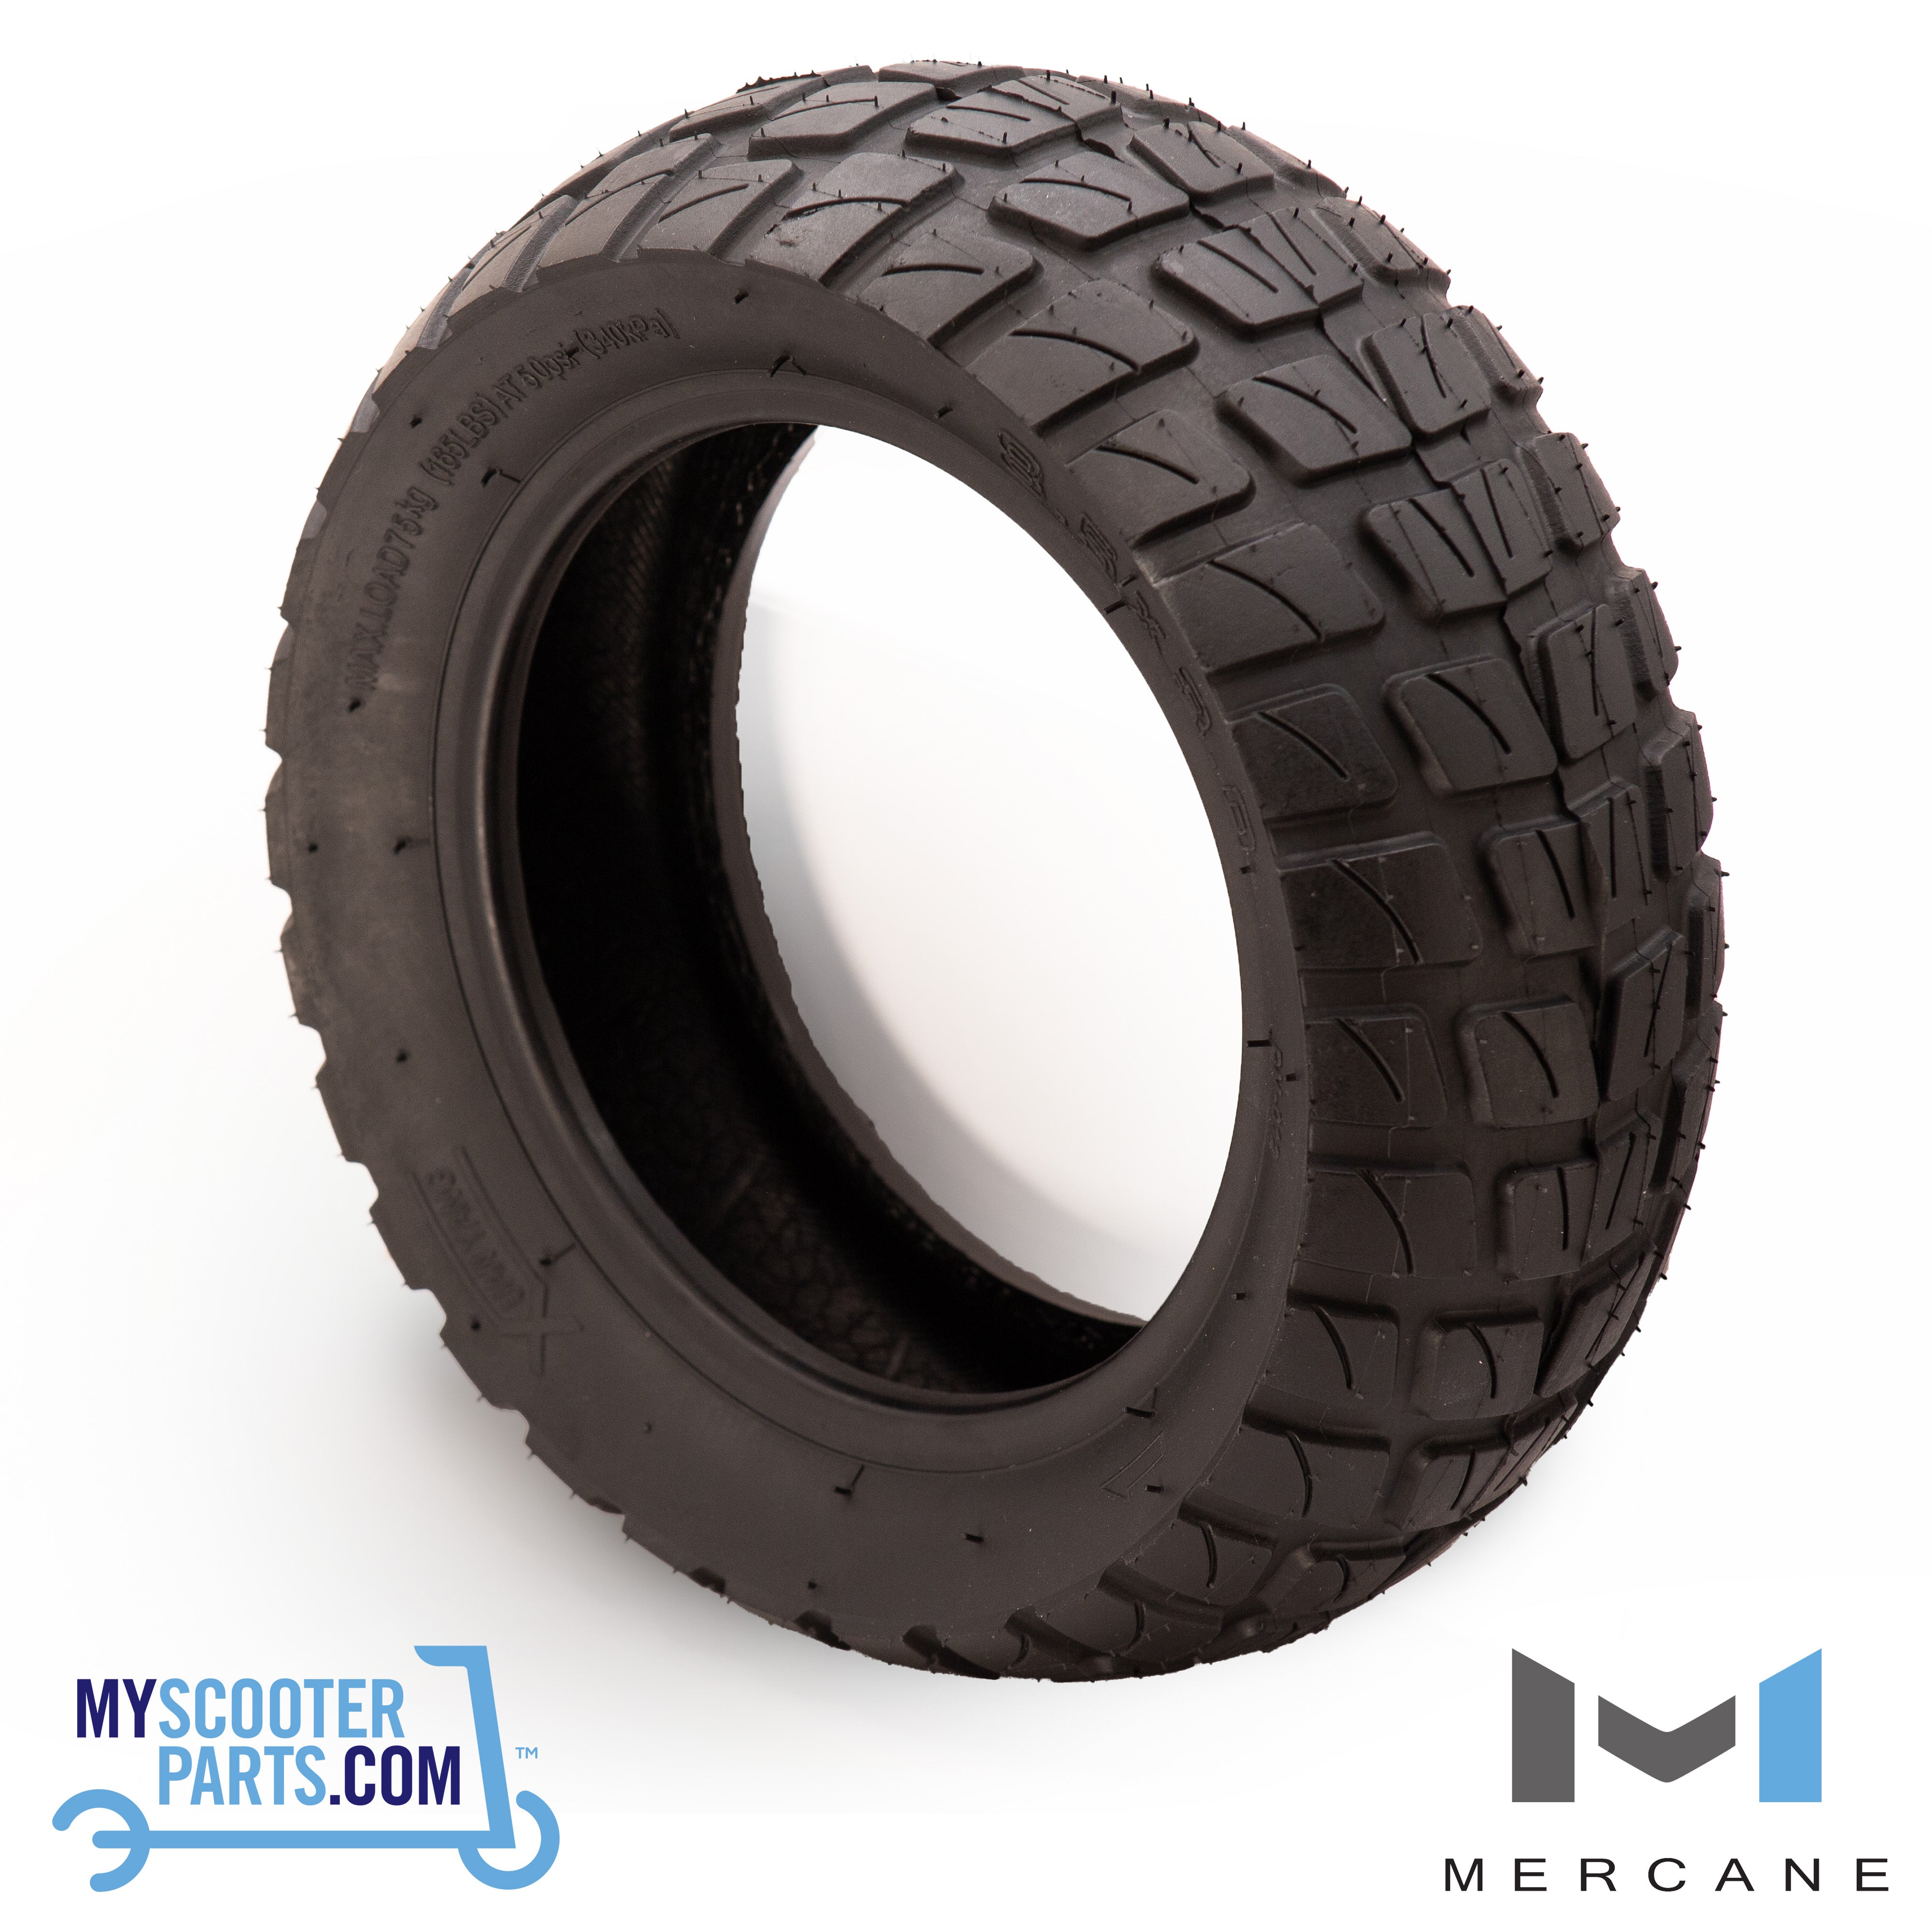 Mercane | G2 Pro | Tyre 8.5 x 3.0 - All Terrain (80/50-6)